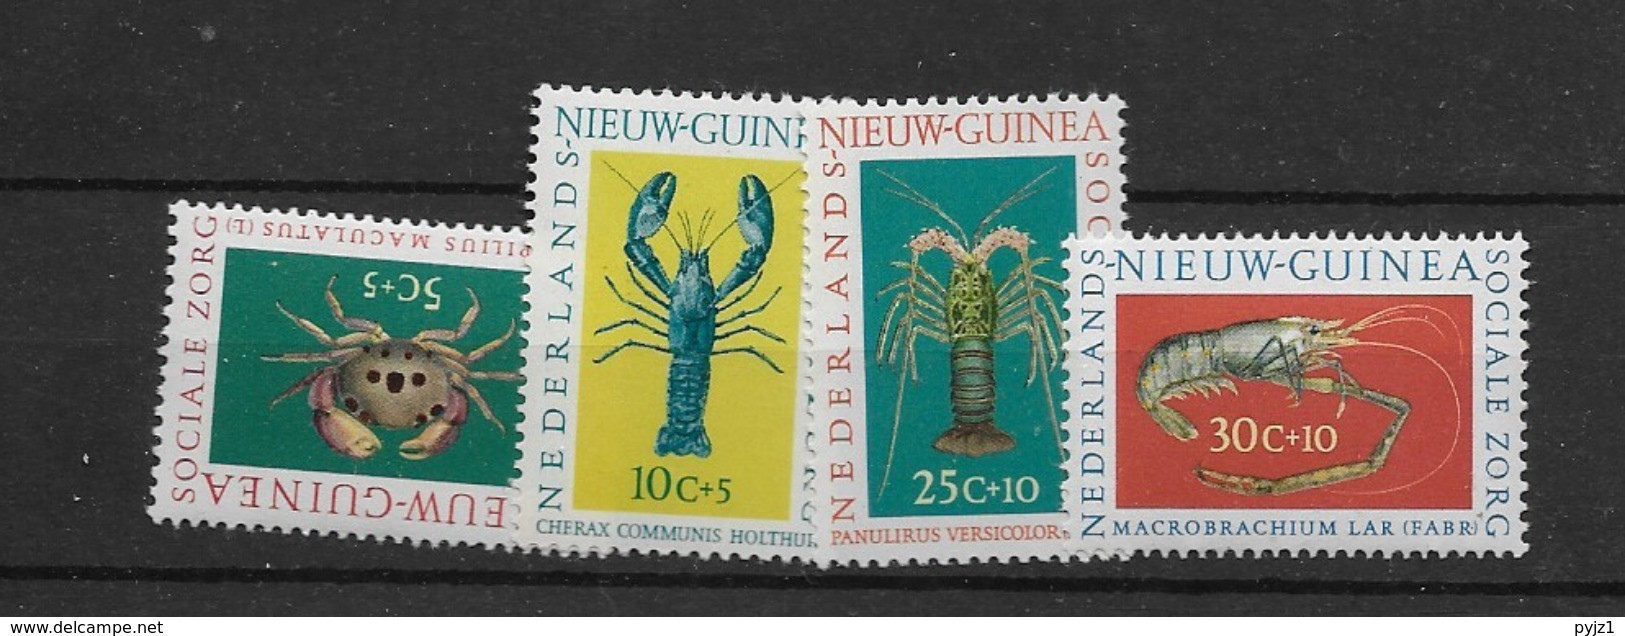 1962 Nederlands Nieuw Guinea, Postfris** - Schaaldieren